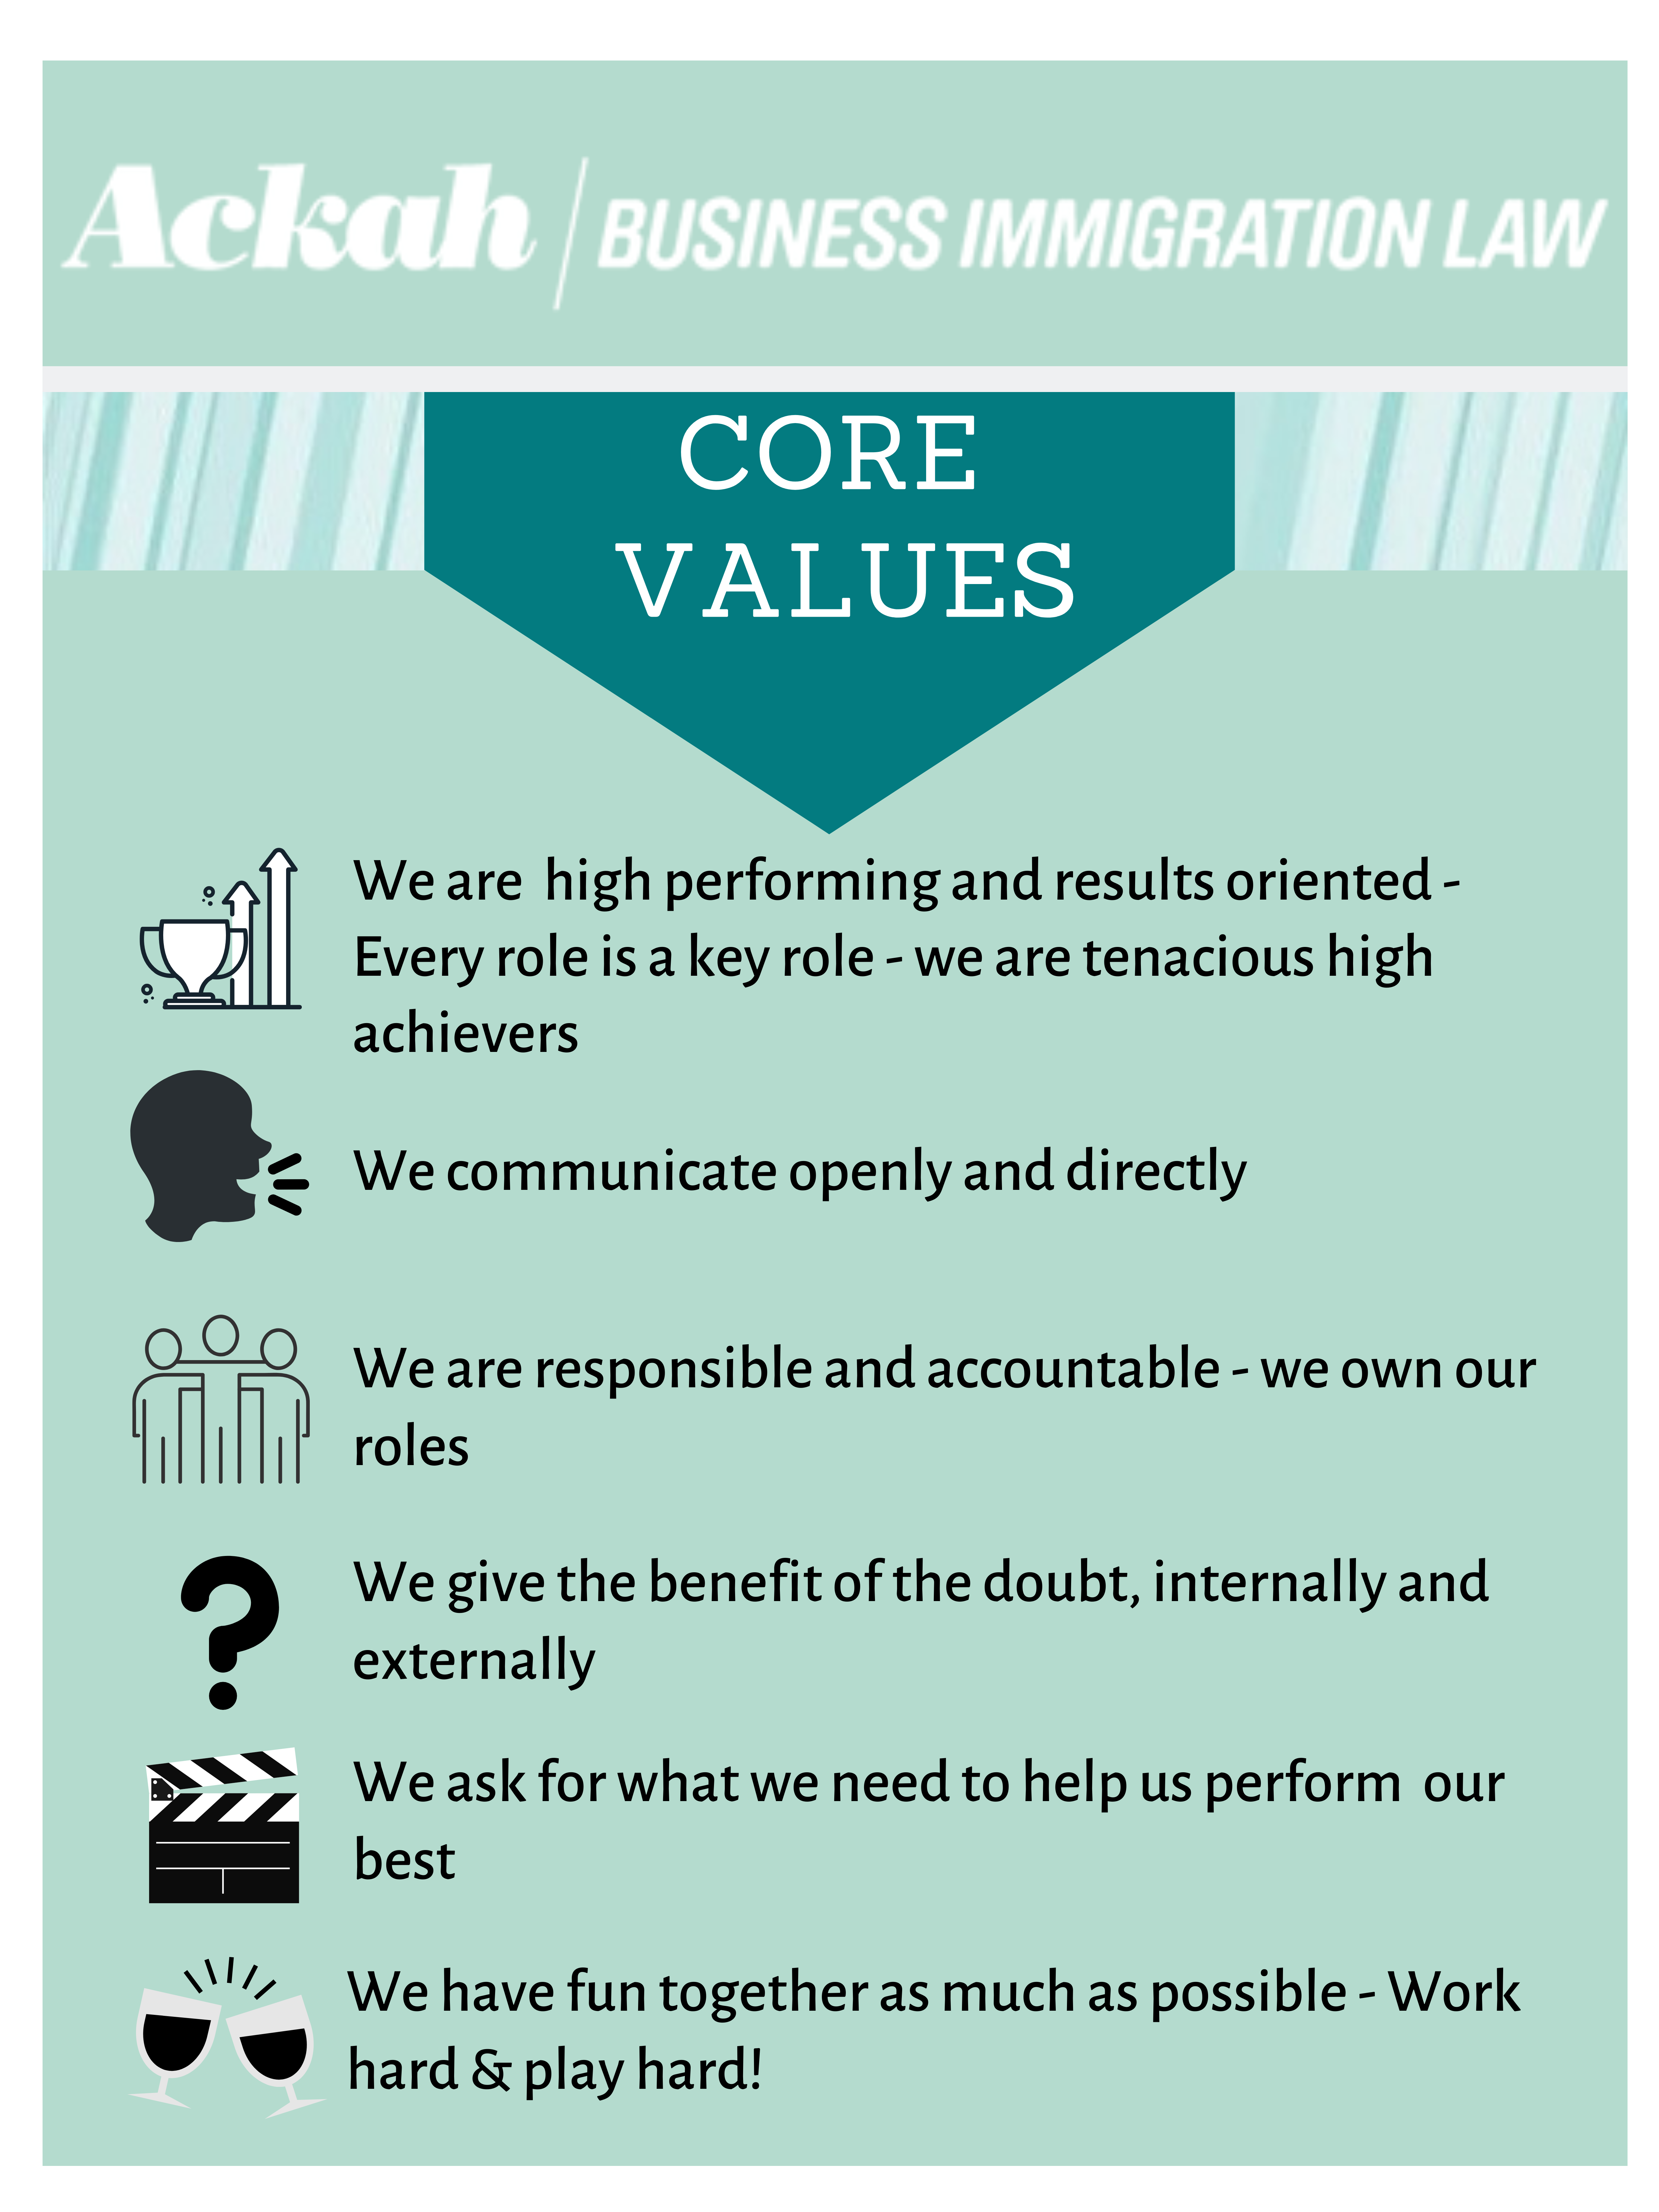 Ackah Business Immigration Law Core Values